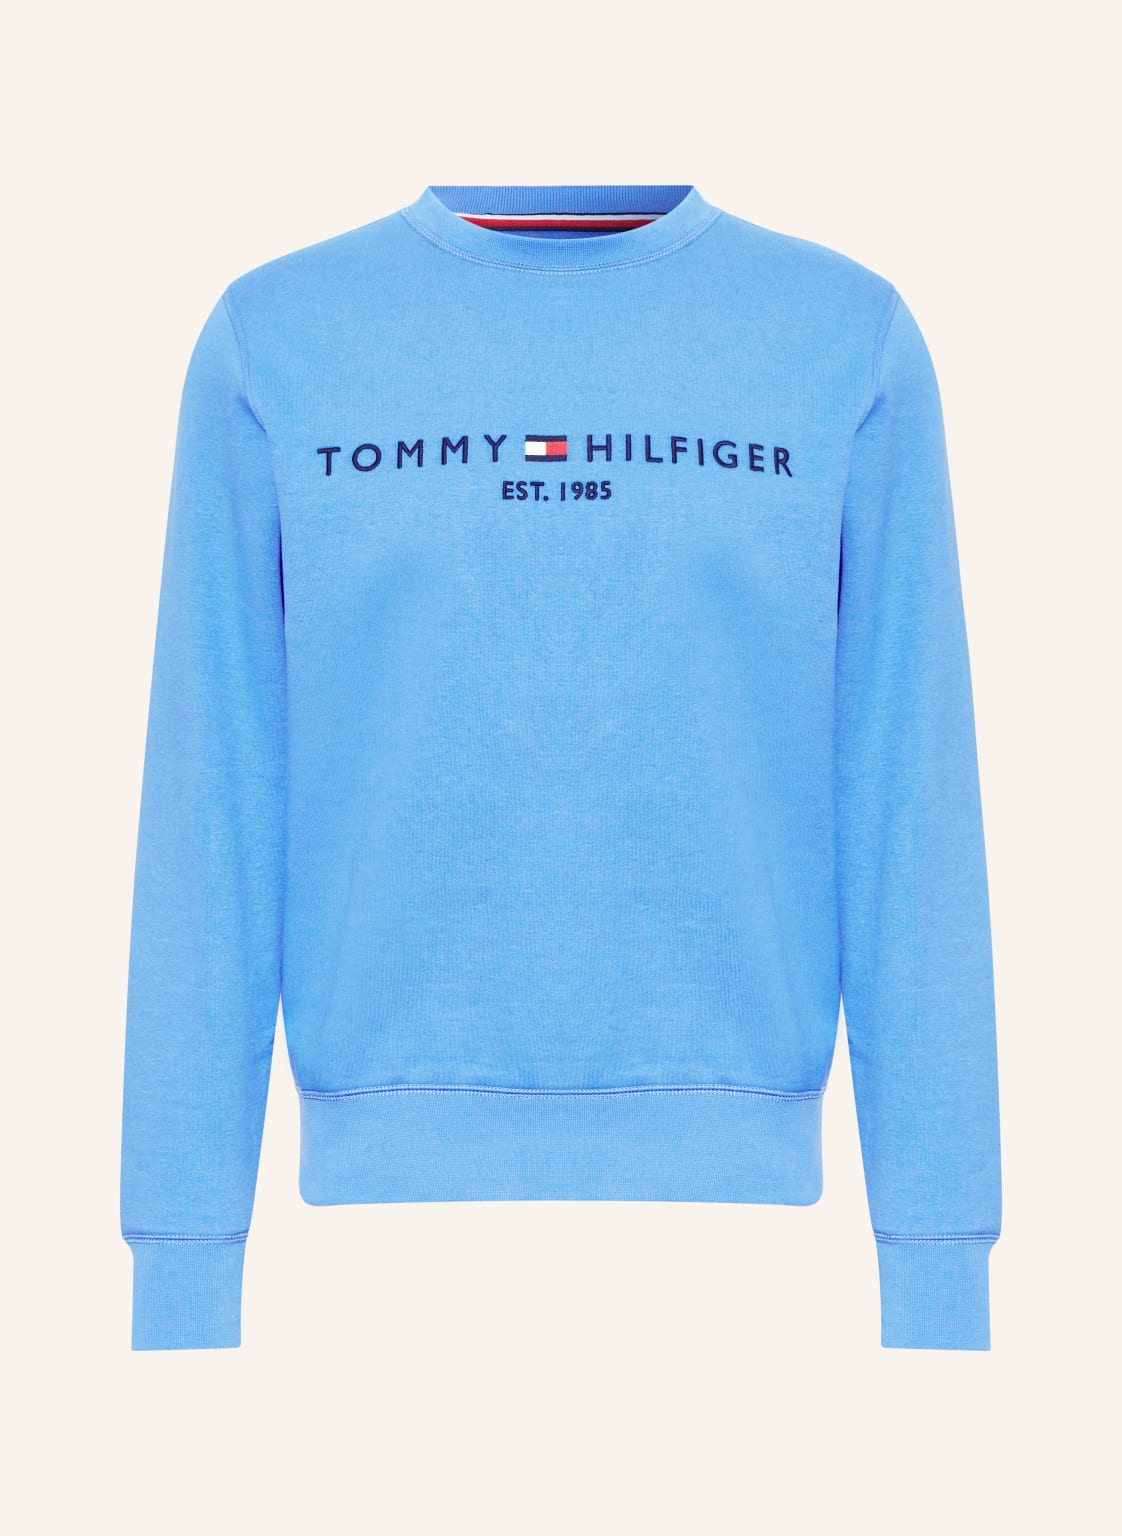 Tommy Hilfiger Sweatshirt blau von Tommy Hilfiger